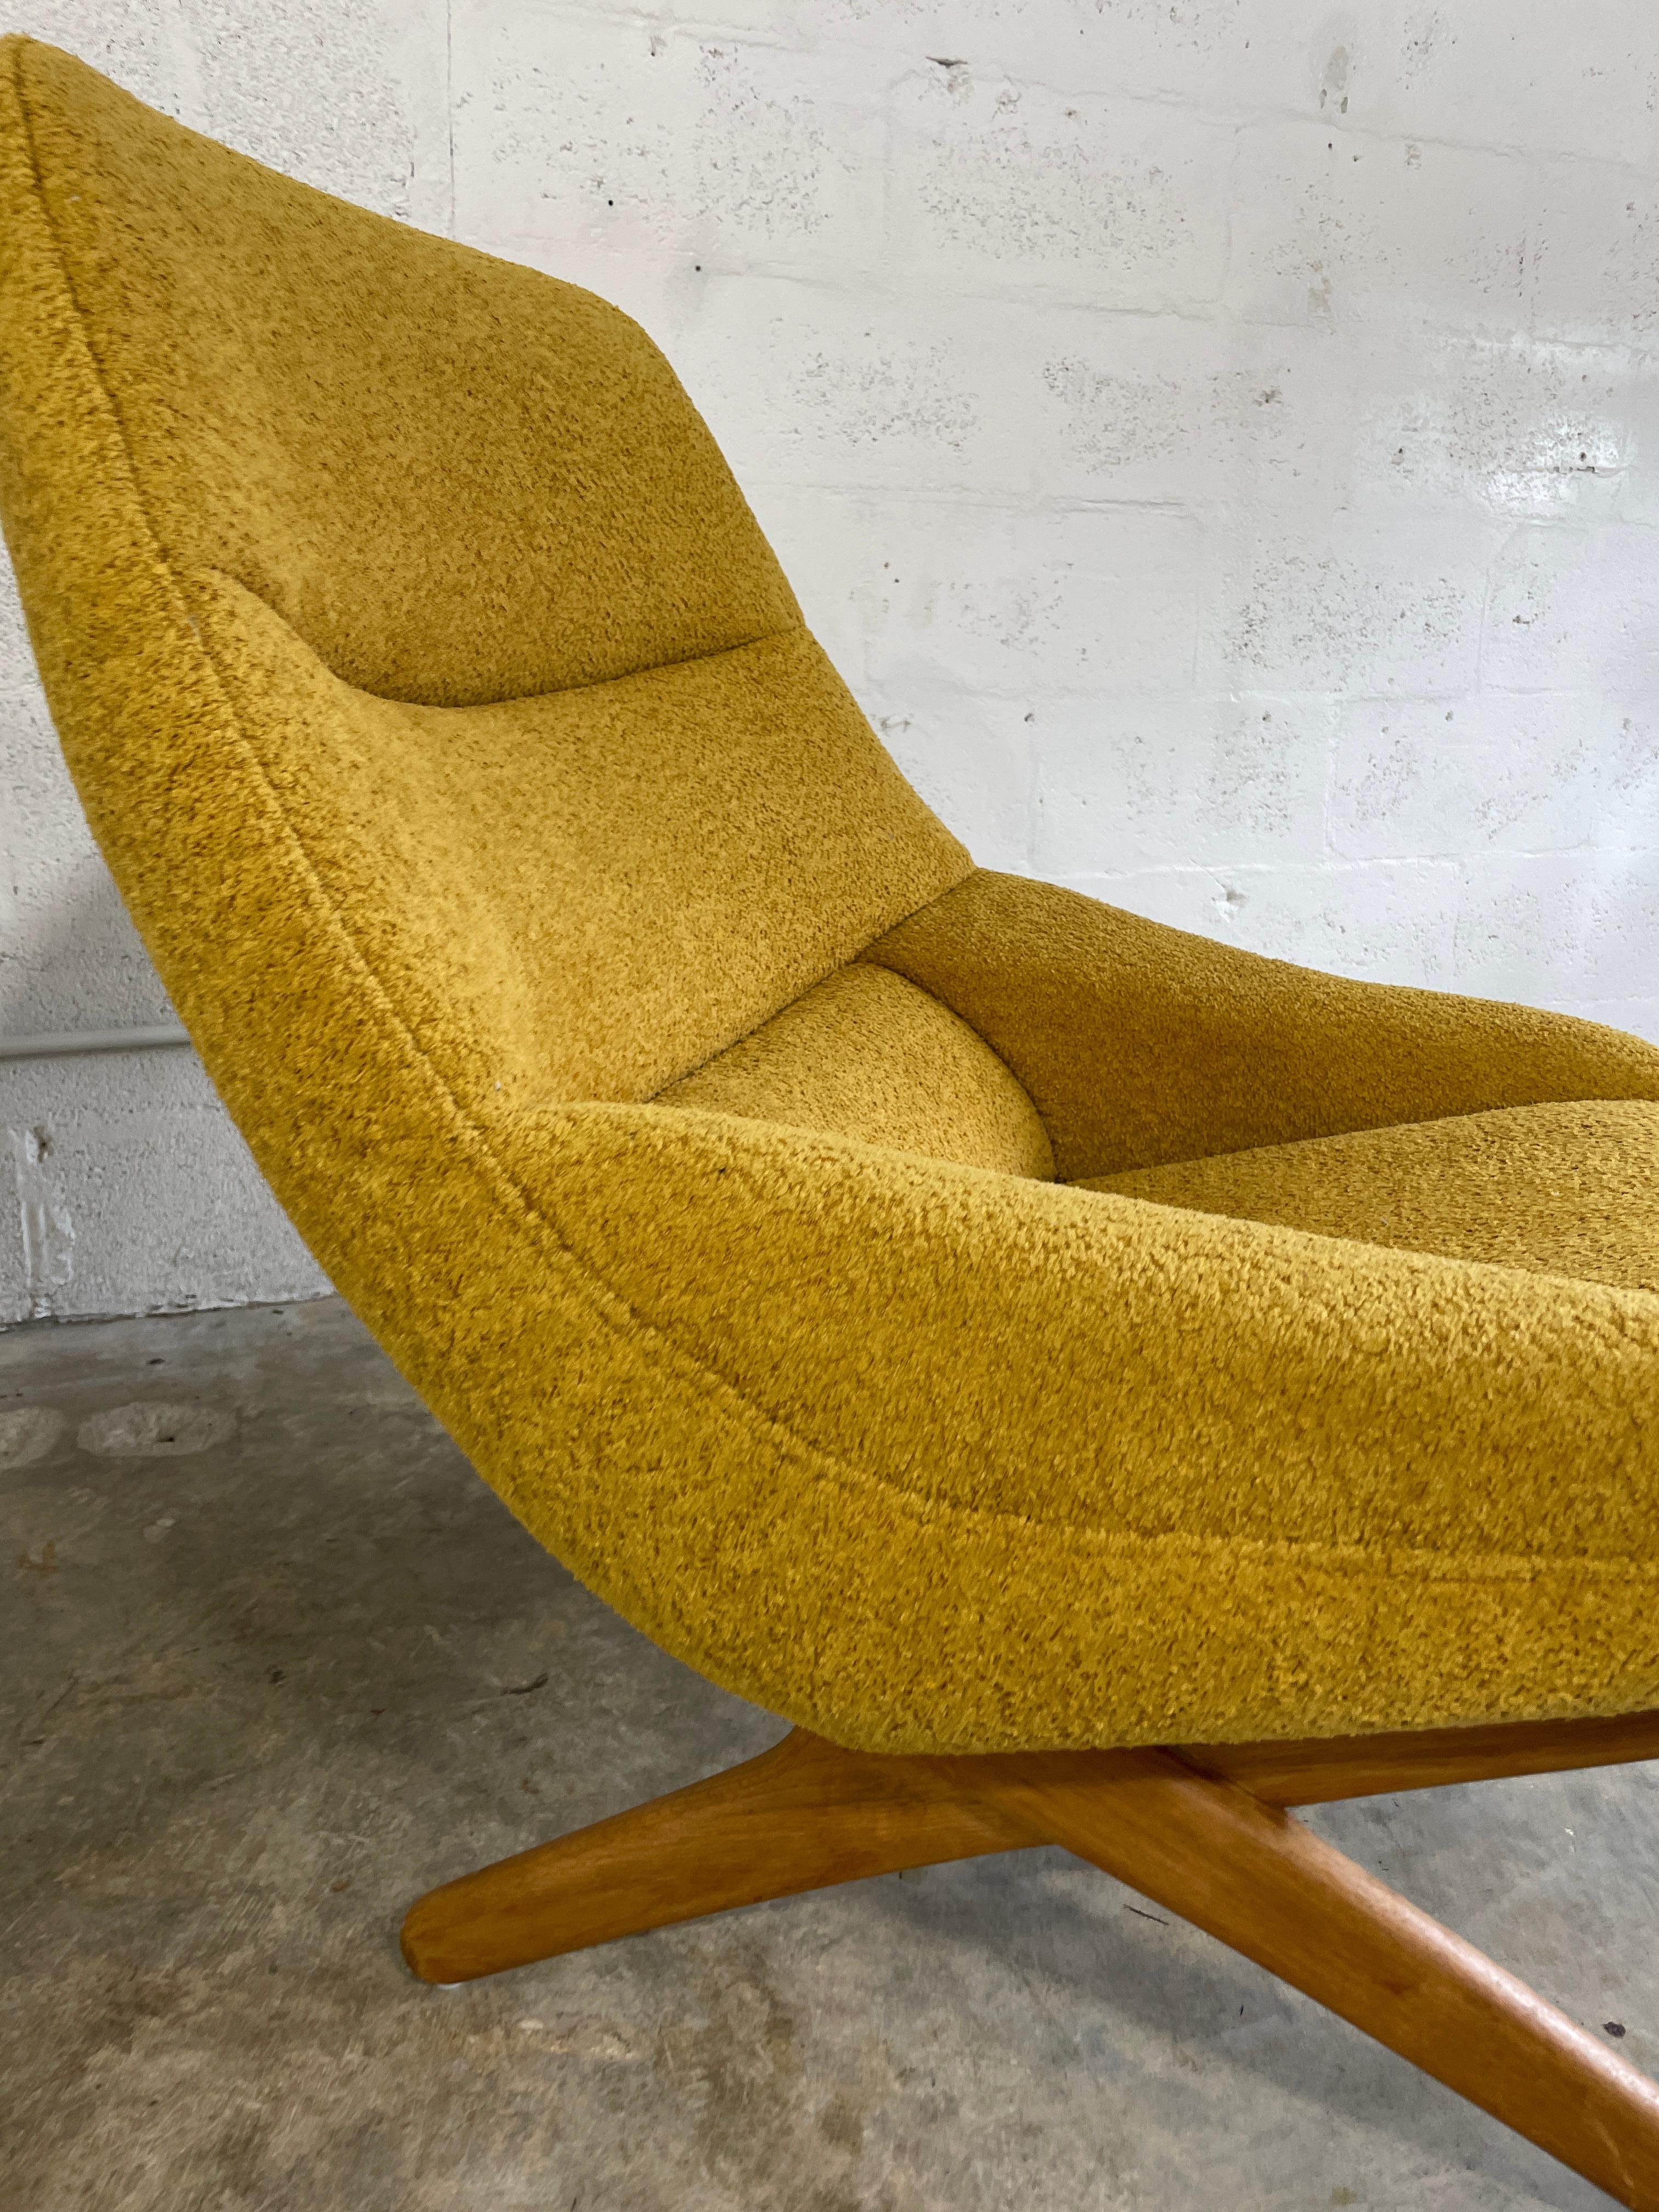 Illum Wikkelso lounge chair model ML-91 for Michael Larsen, Denmark. Sculptural oak x form base. Reupholstered recently.